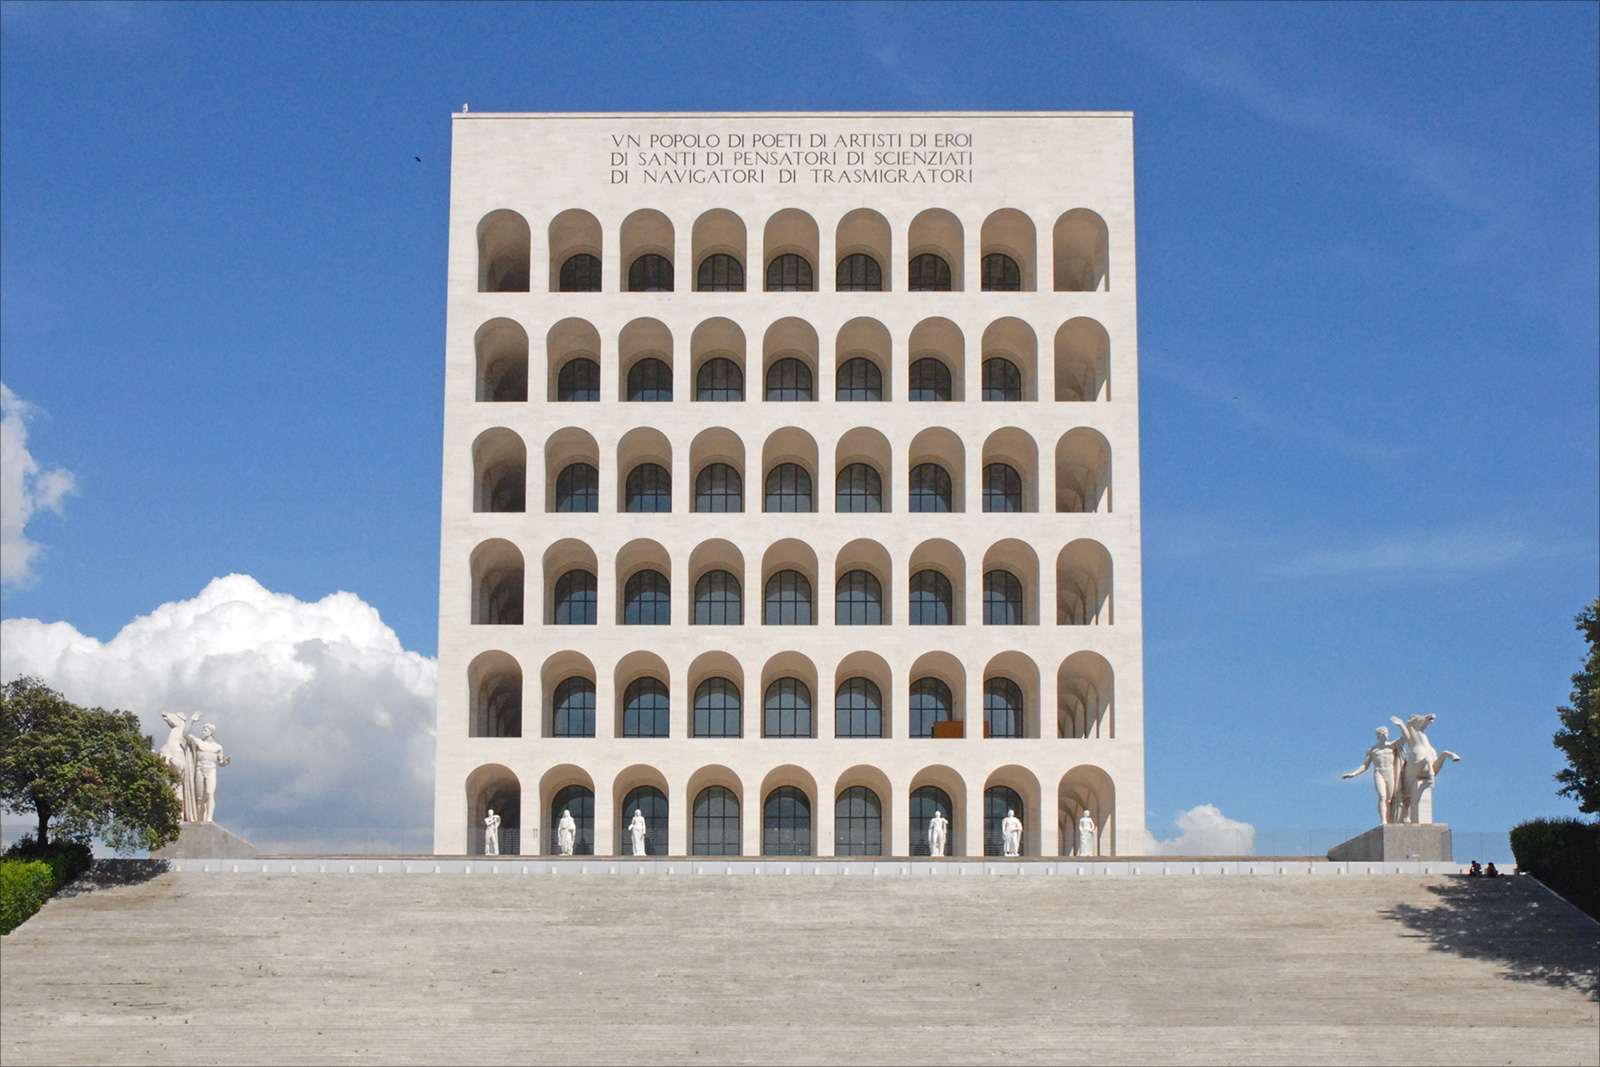 Buildings in Rome: Palazzo della Civilta del Lavoro